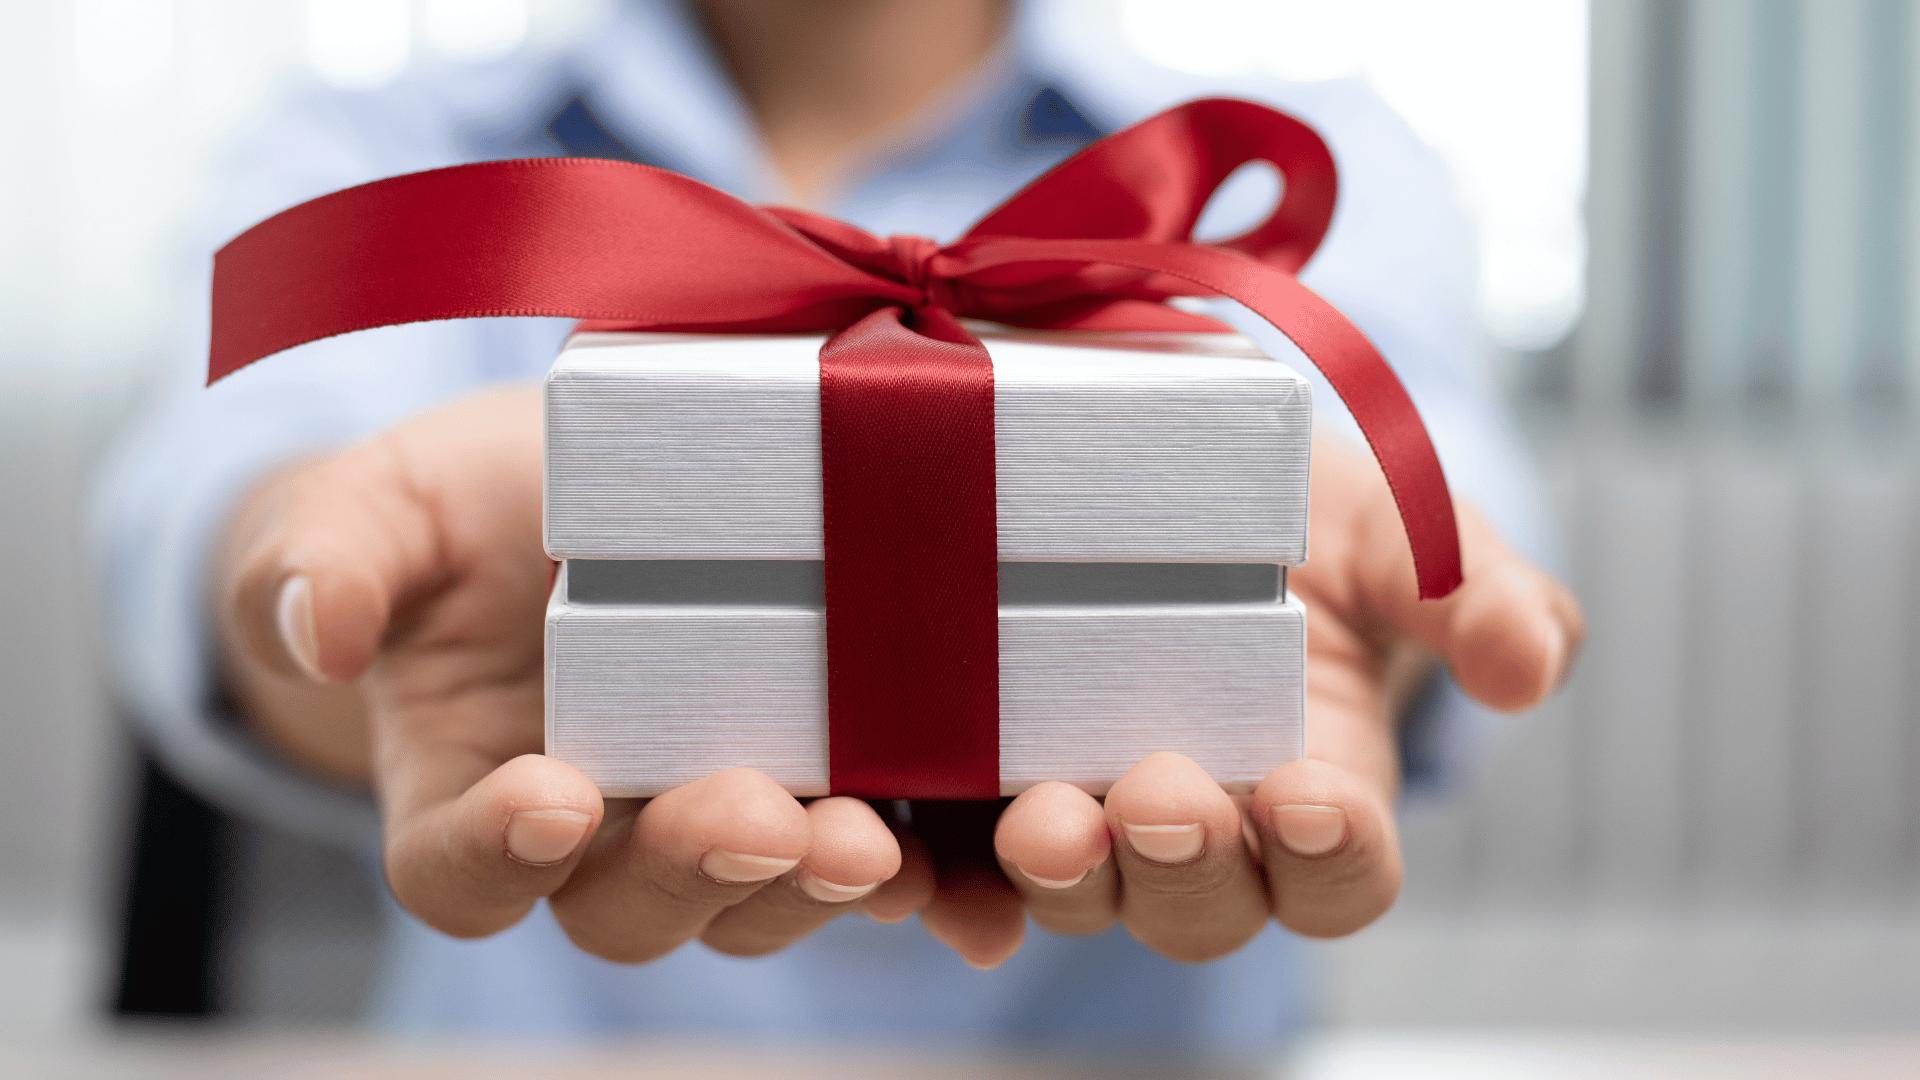 Quà tặng có thể giúp bạn xây dựng mối quan hệ với người nhận